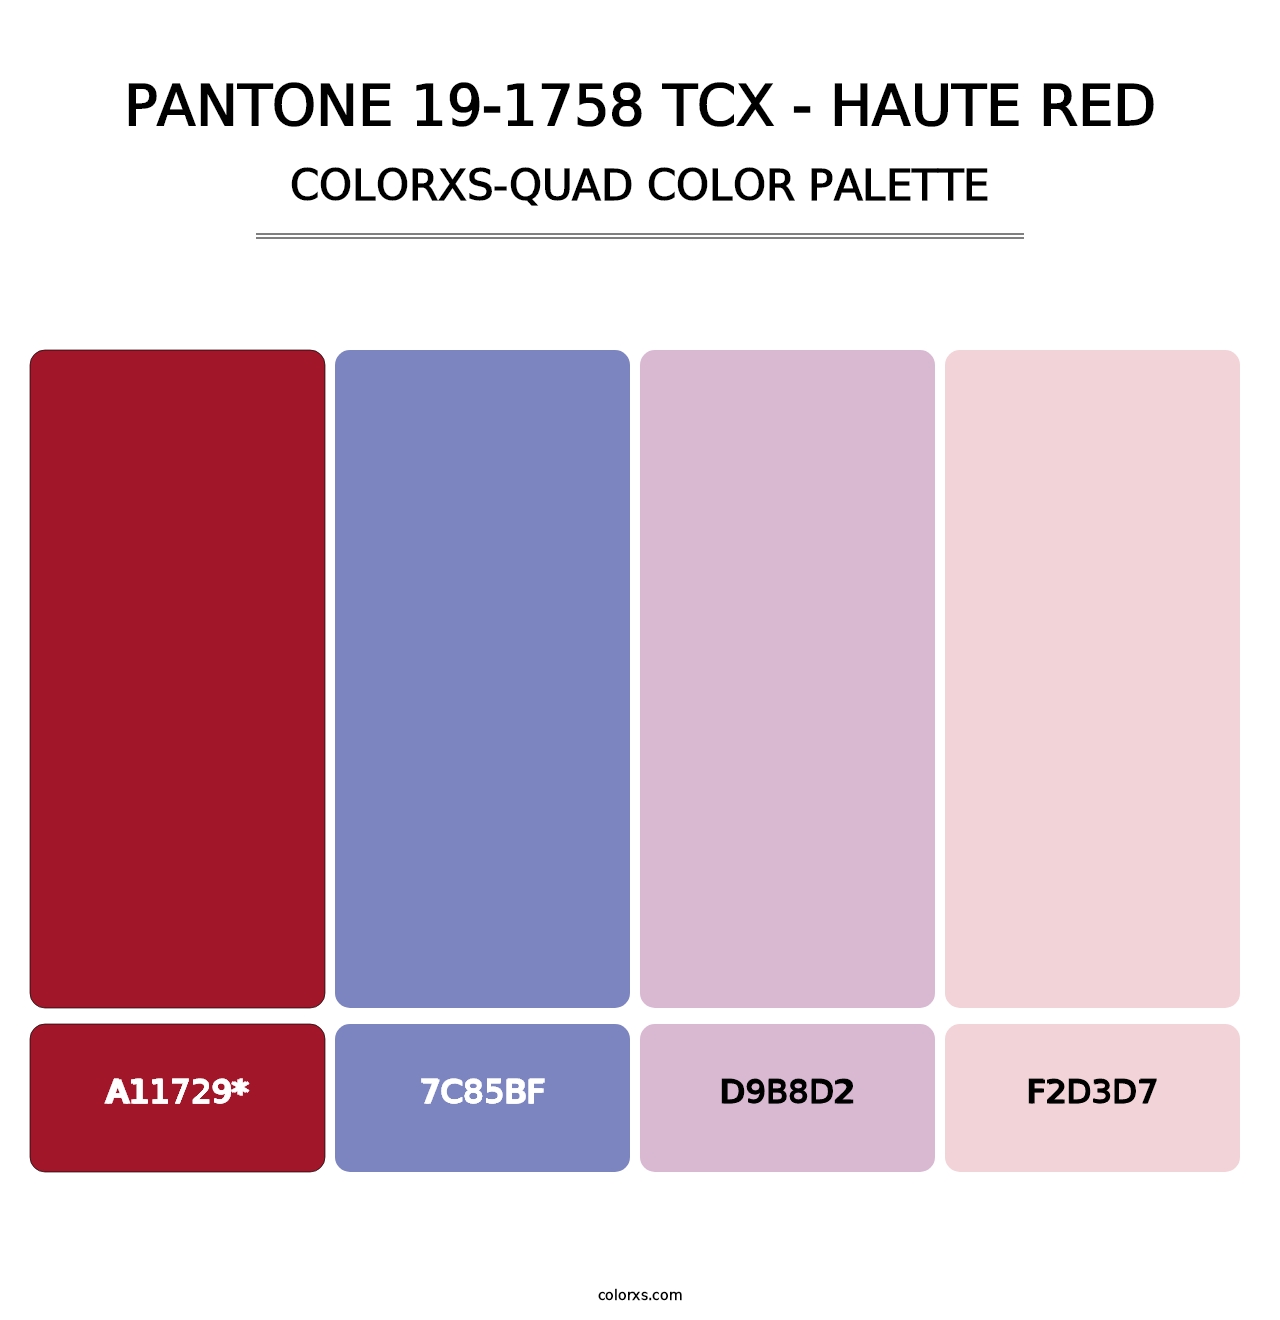 PANTONE 19-1758 TCX - Haute Red - Colorxs Quad Palette